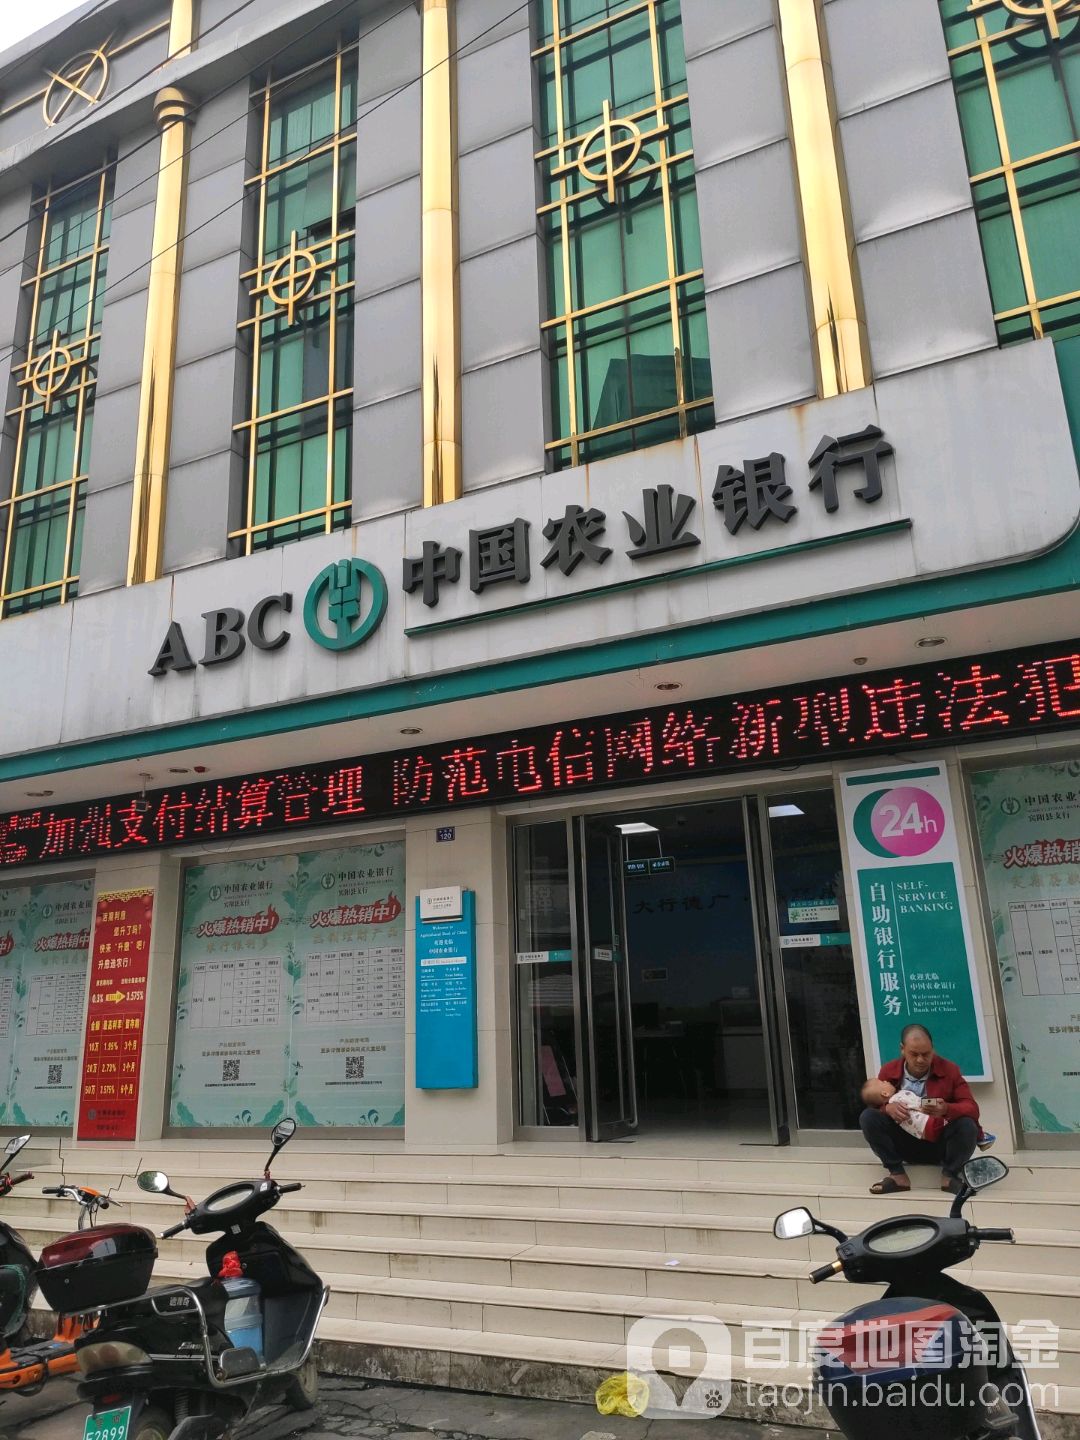 中國農業銀行24小時自助銀行(賓州鎮中和街店)